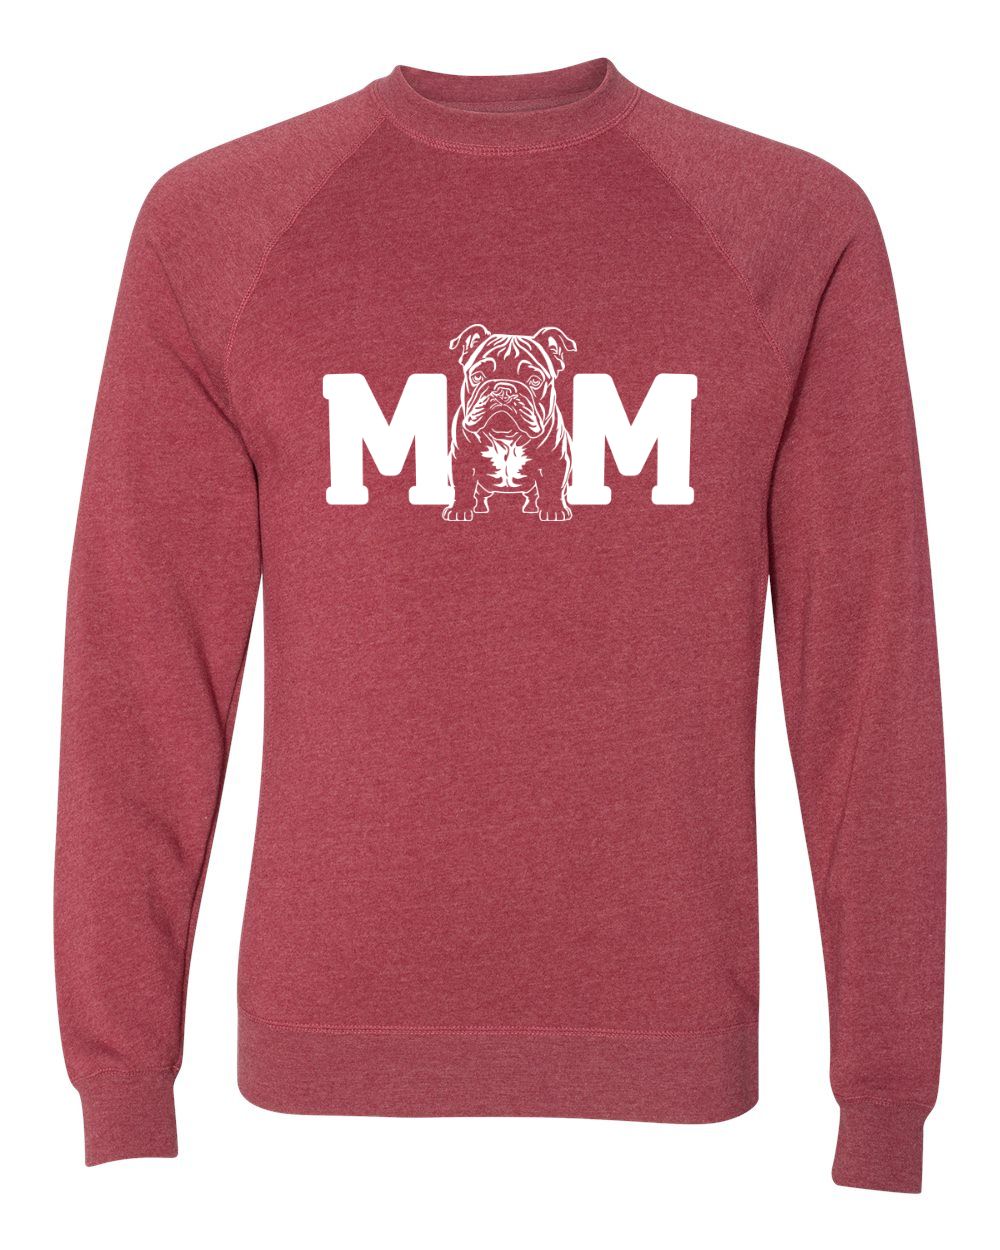 Mom British Bulldog Sweatshirt